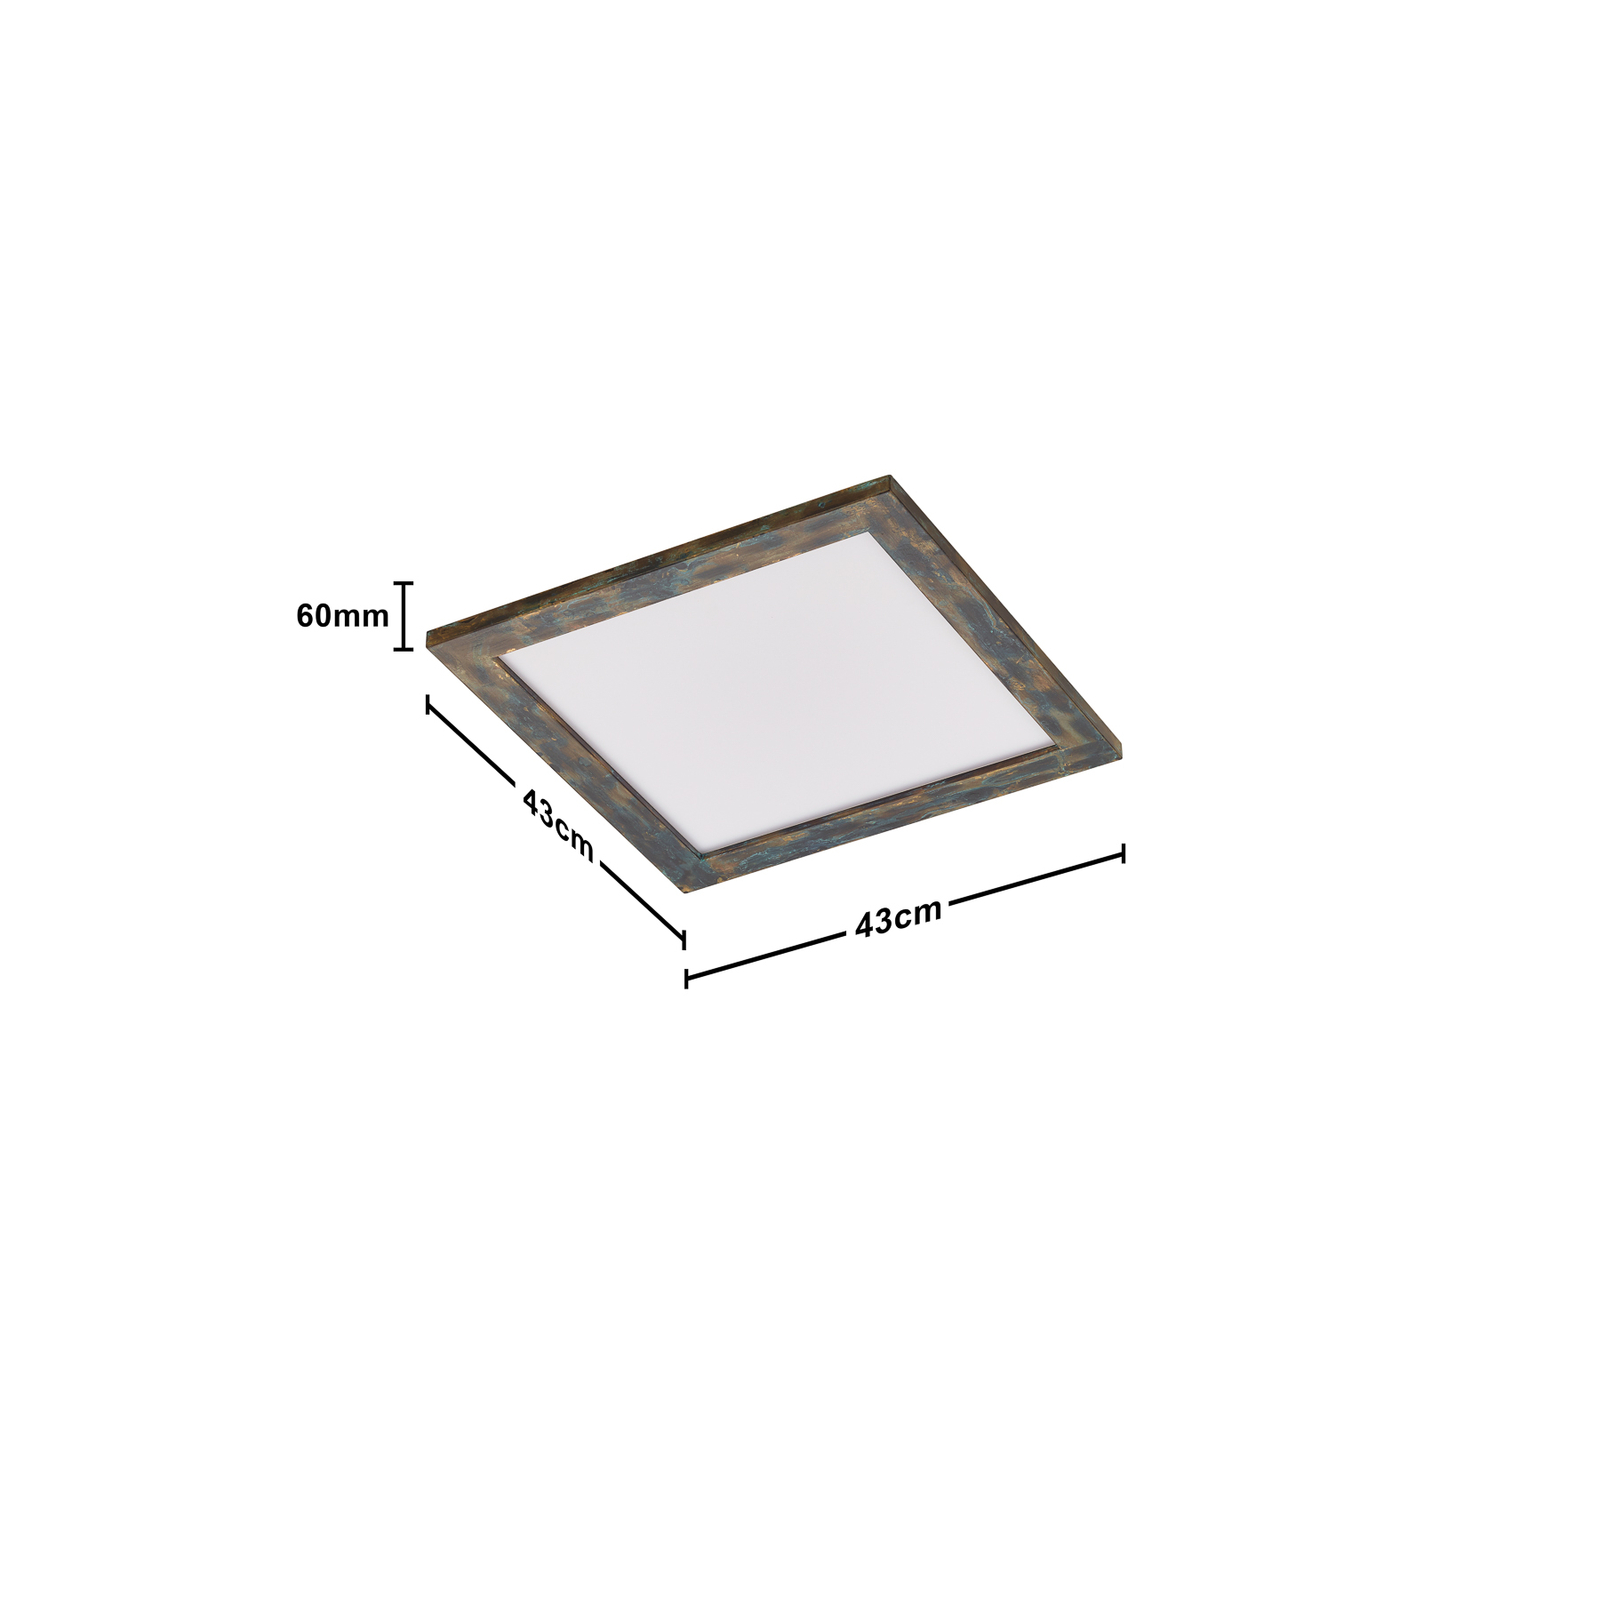 Quitani Aurinor LED paneel, goudkleurig gepatineerd, 45 cm